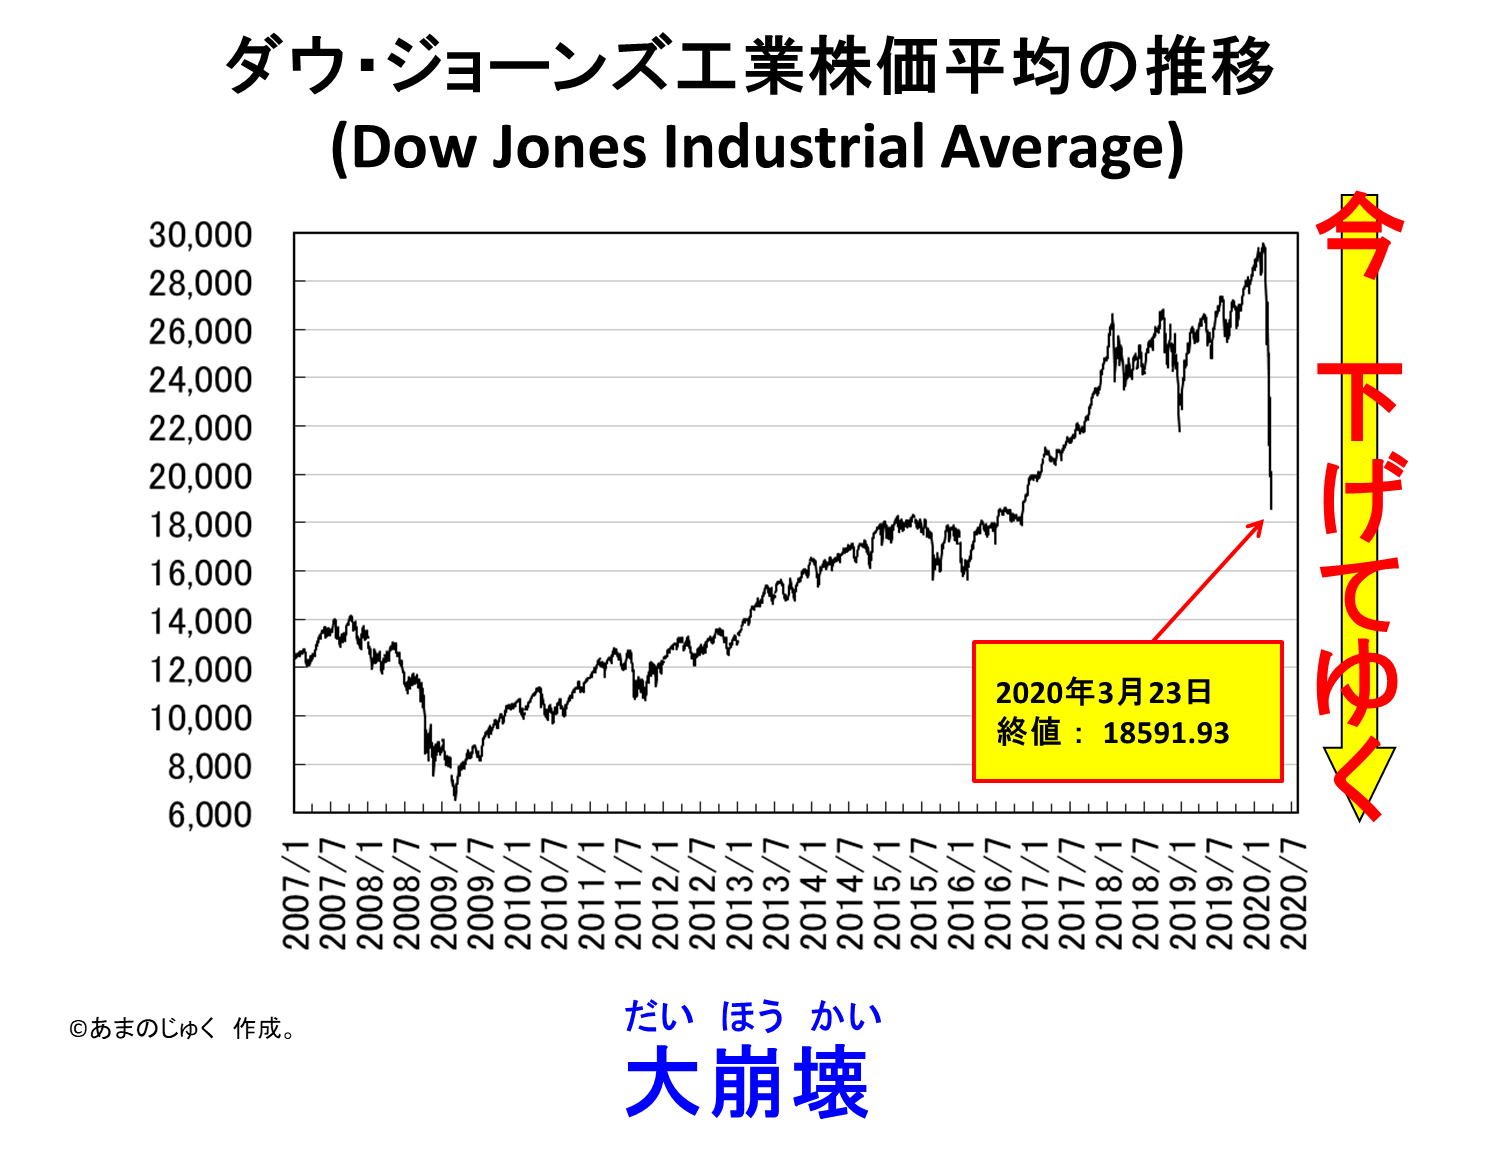 Dow Jones 20200323